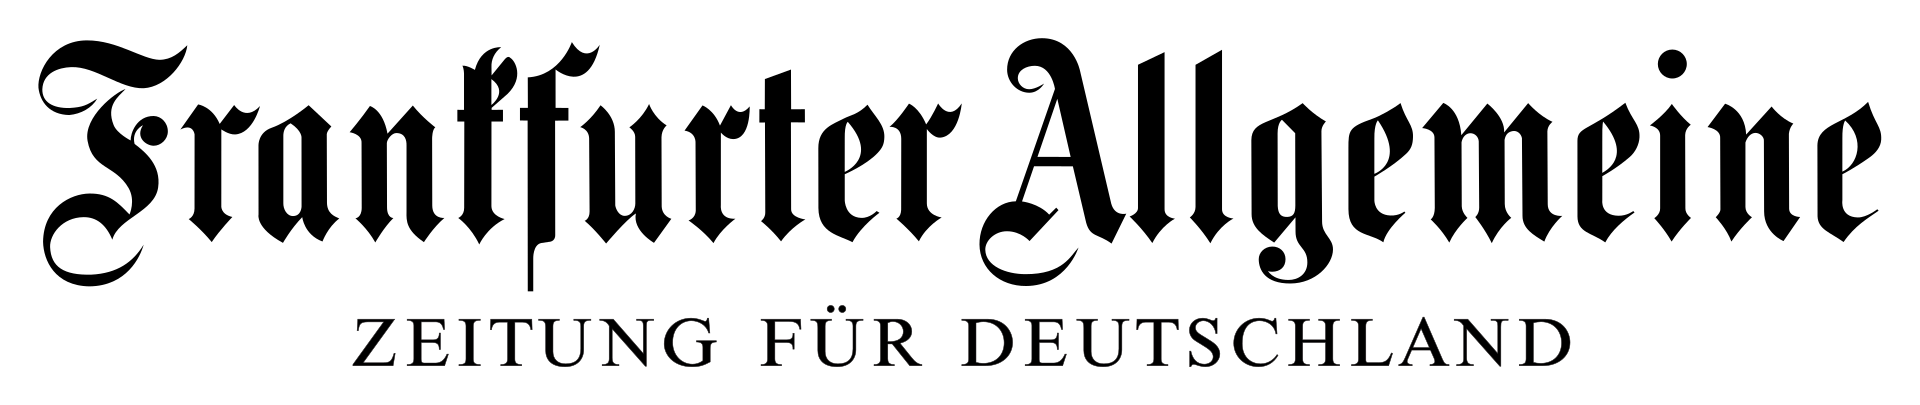 1920px-Frankfurter_Allgemeine_logo.svg.png